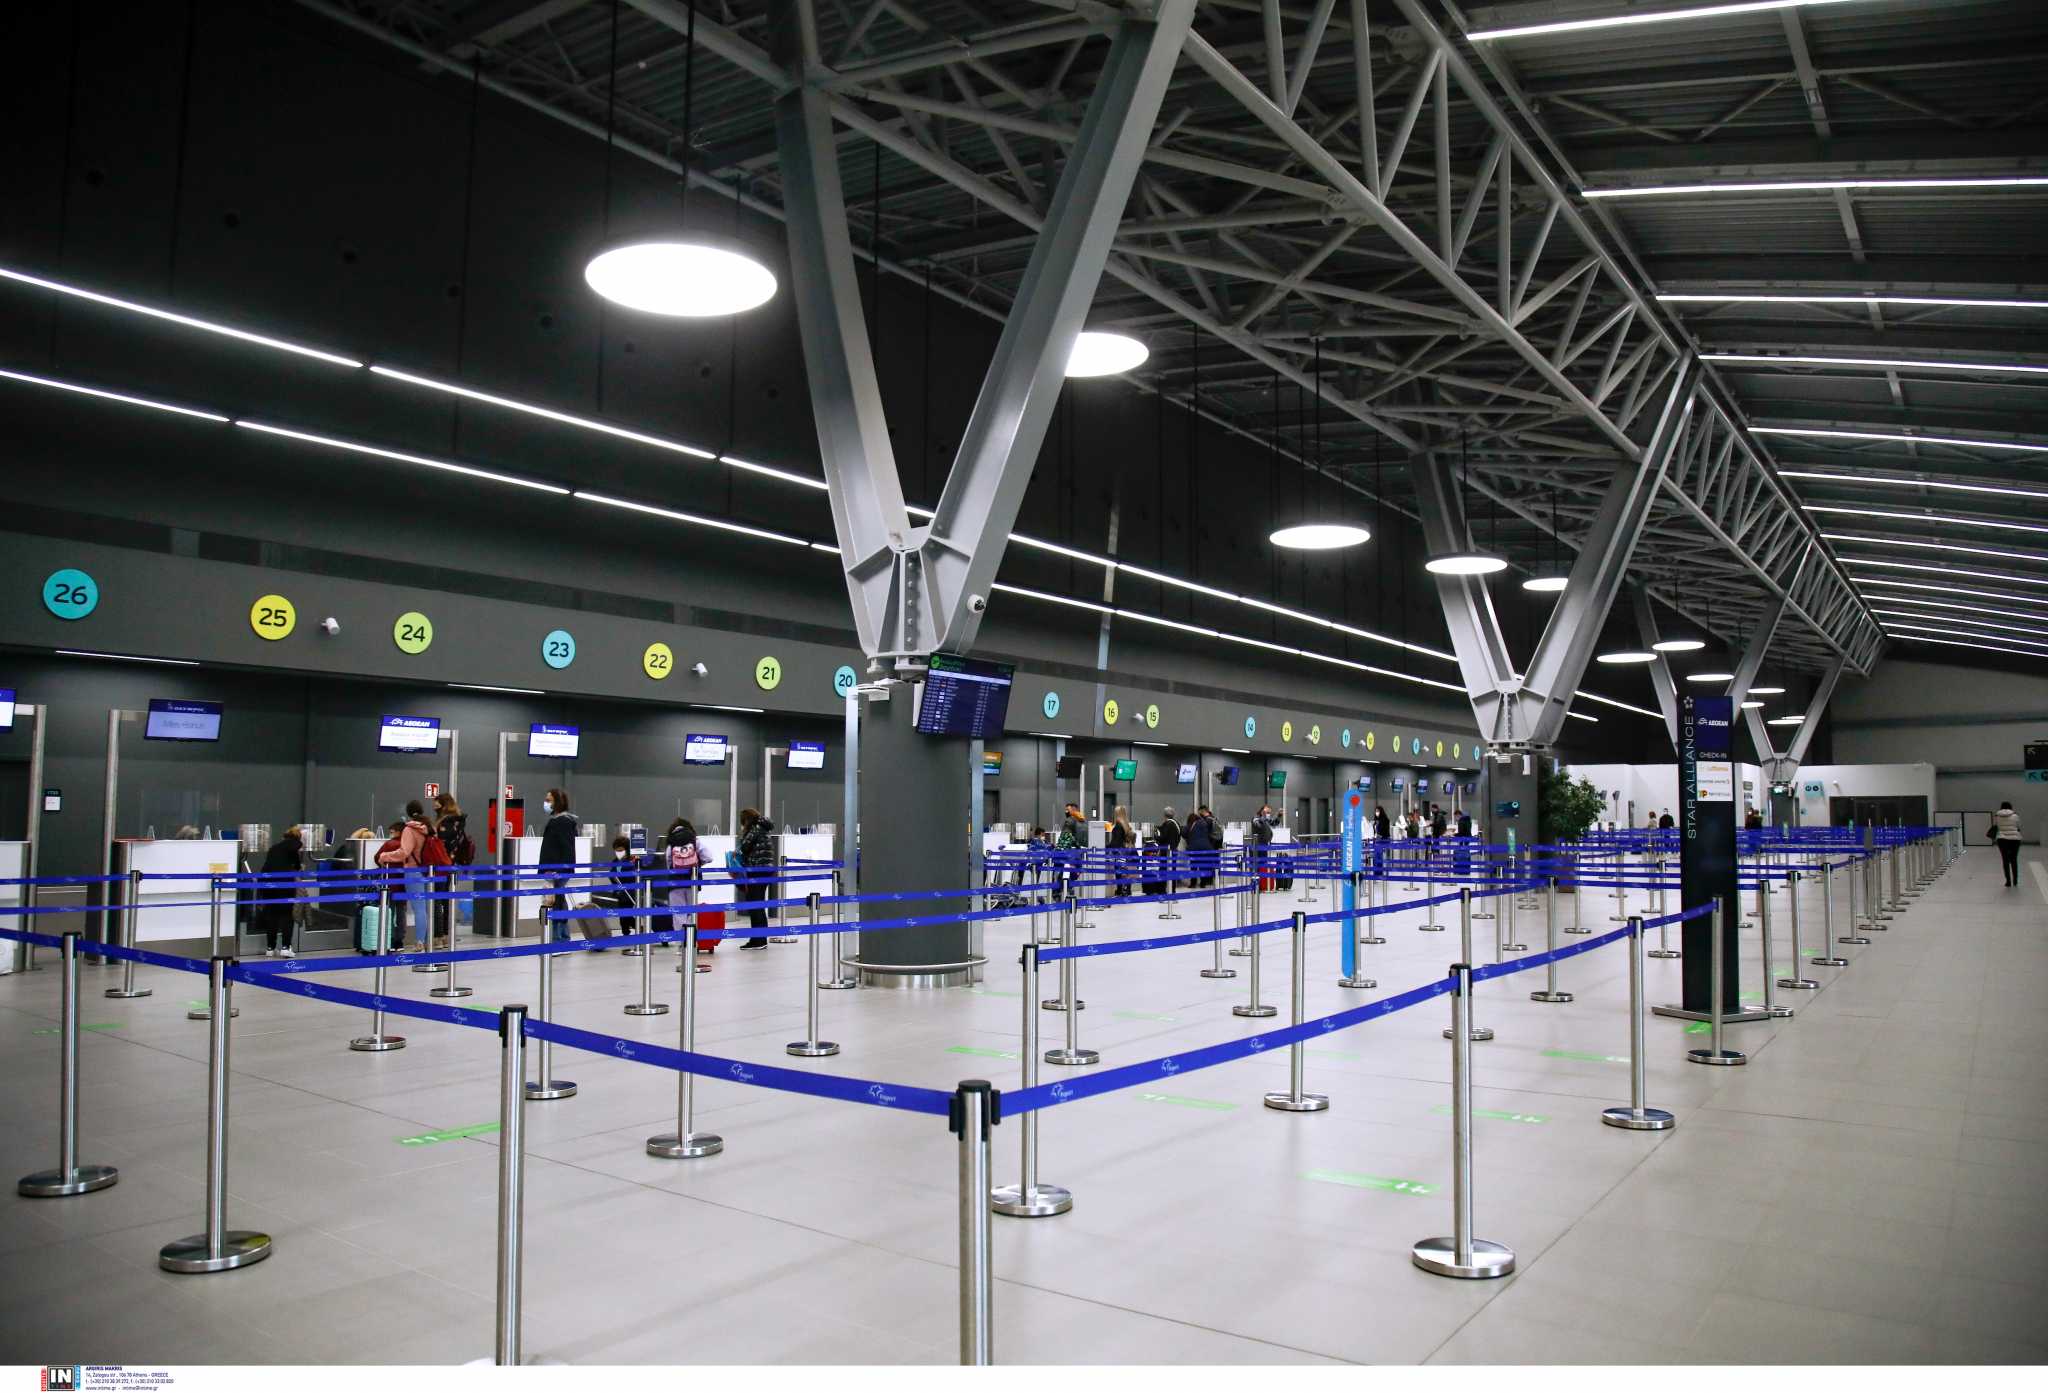 Θεσσαλονίκη – Αναστάτωση στο αεροδρόμιο «Μακεδονία» - Χτύπησαν σειρήνες εκκένωσης